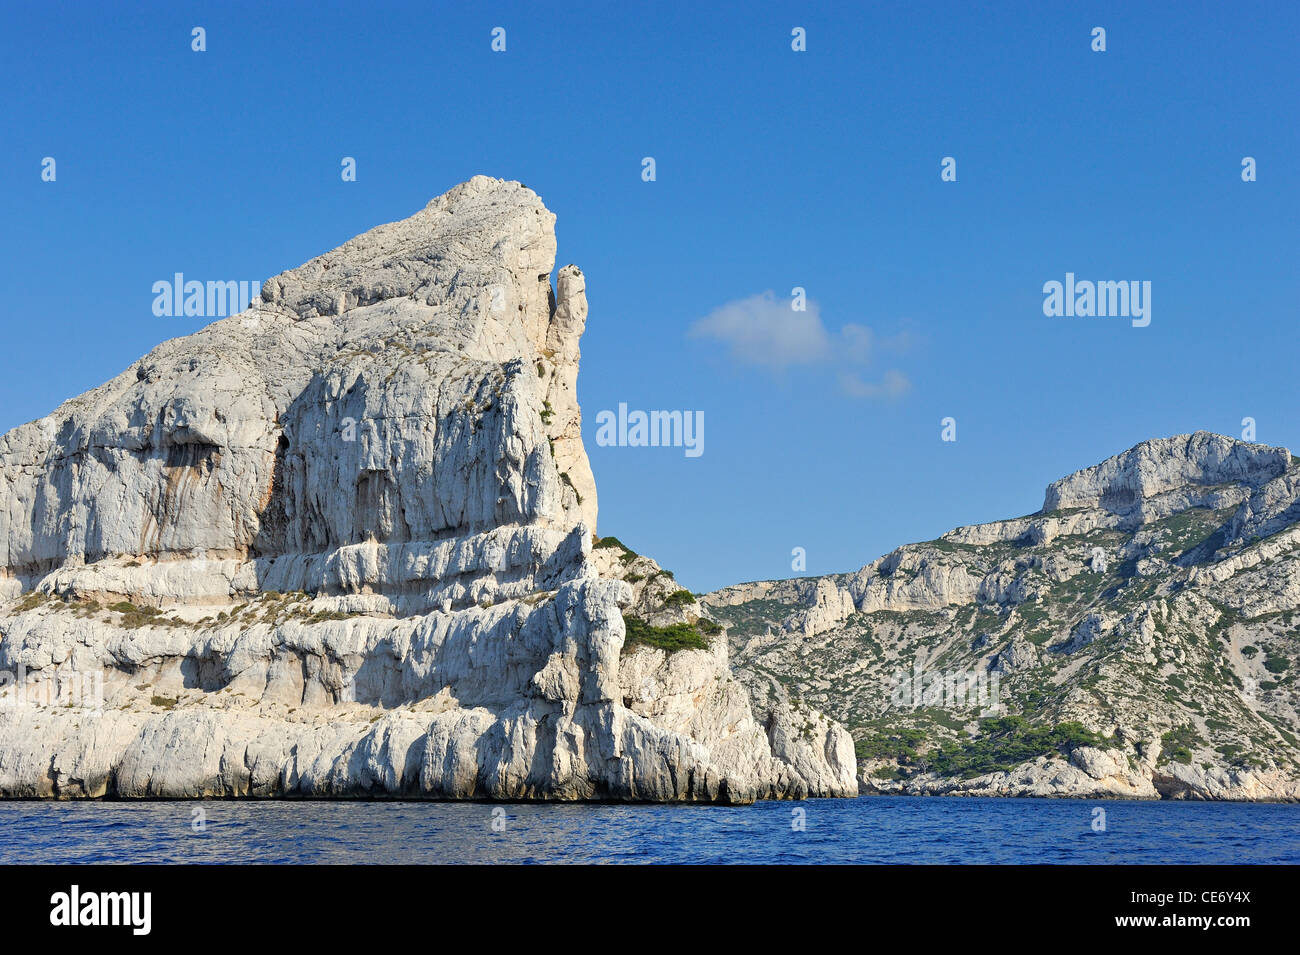 Klippen von der Calanque de Morgiou Inlet, vom Mittelmeer, Marseille, Frankreich Stockfoto